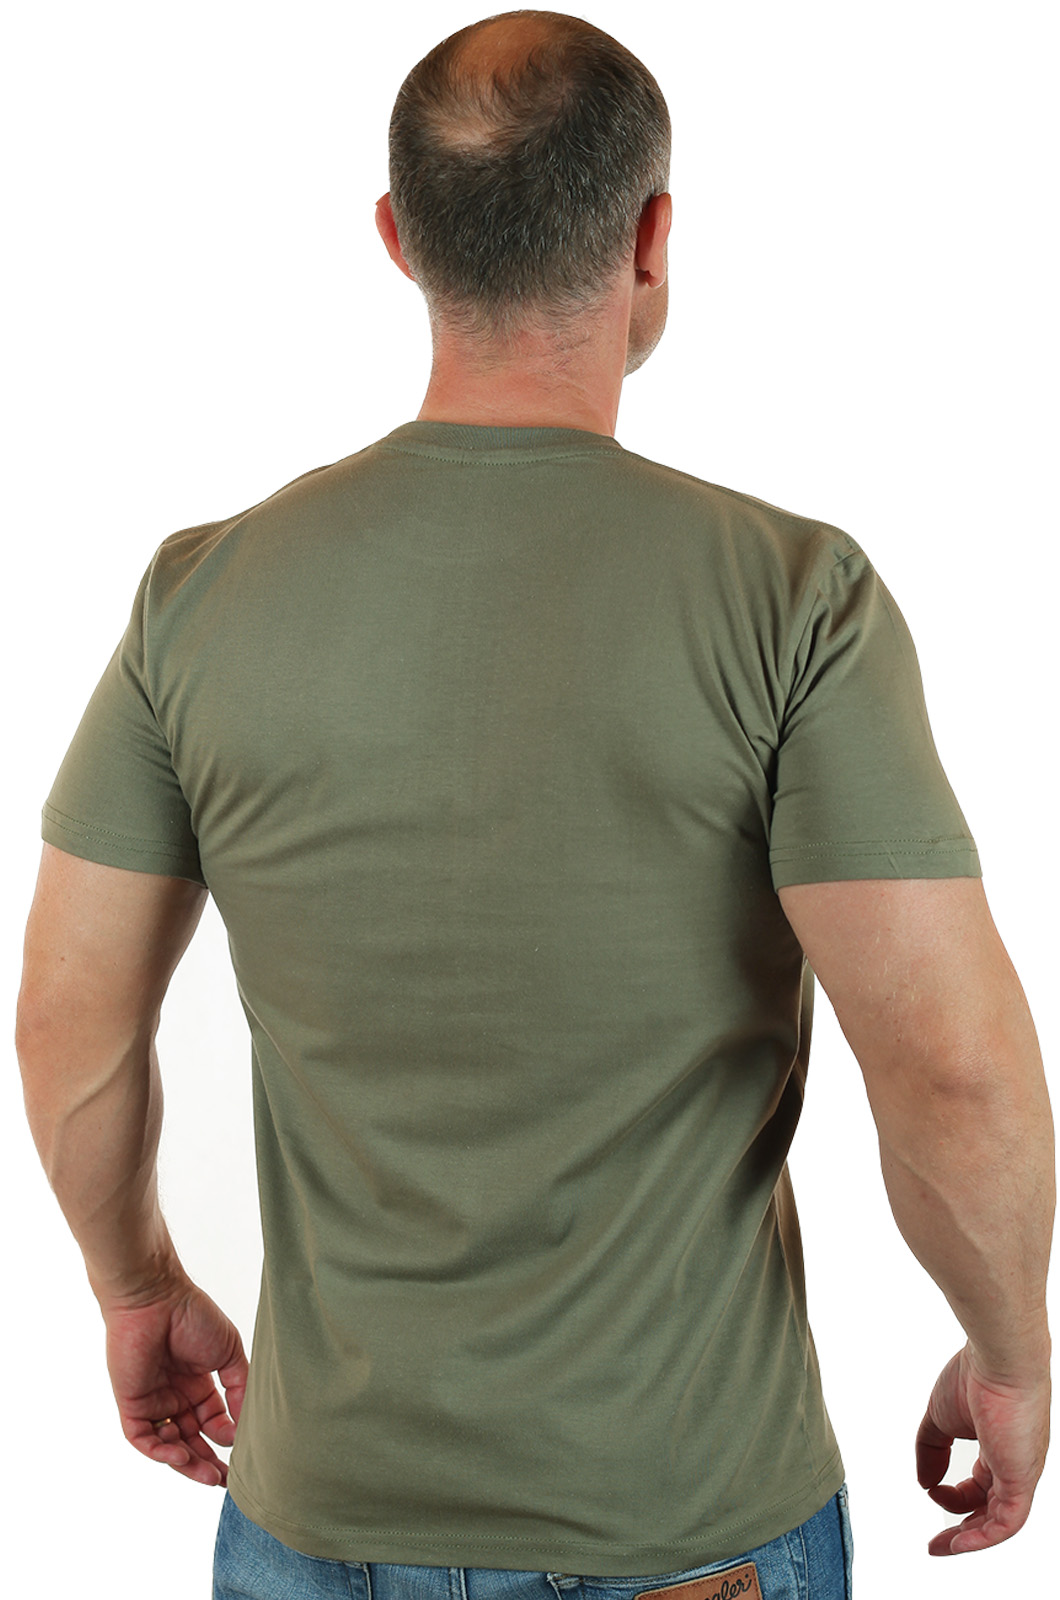 Военная мужская футболка-хлопок РВиА. 